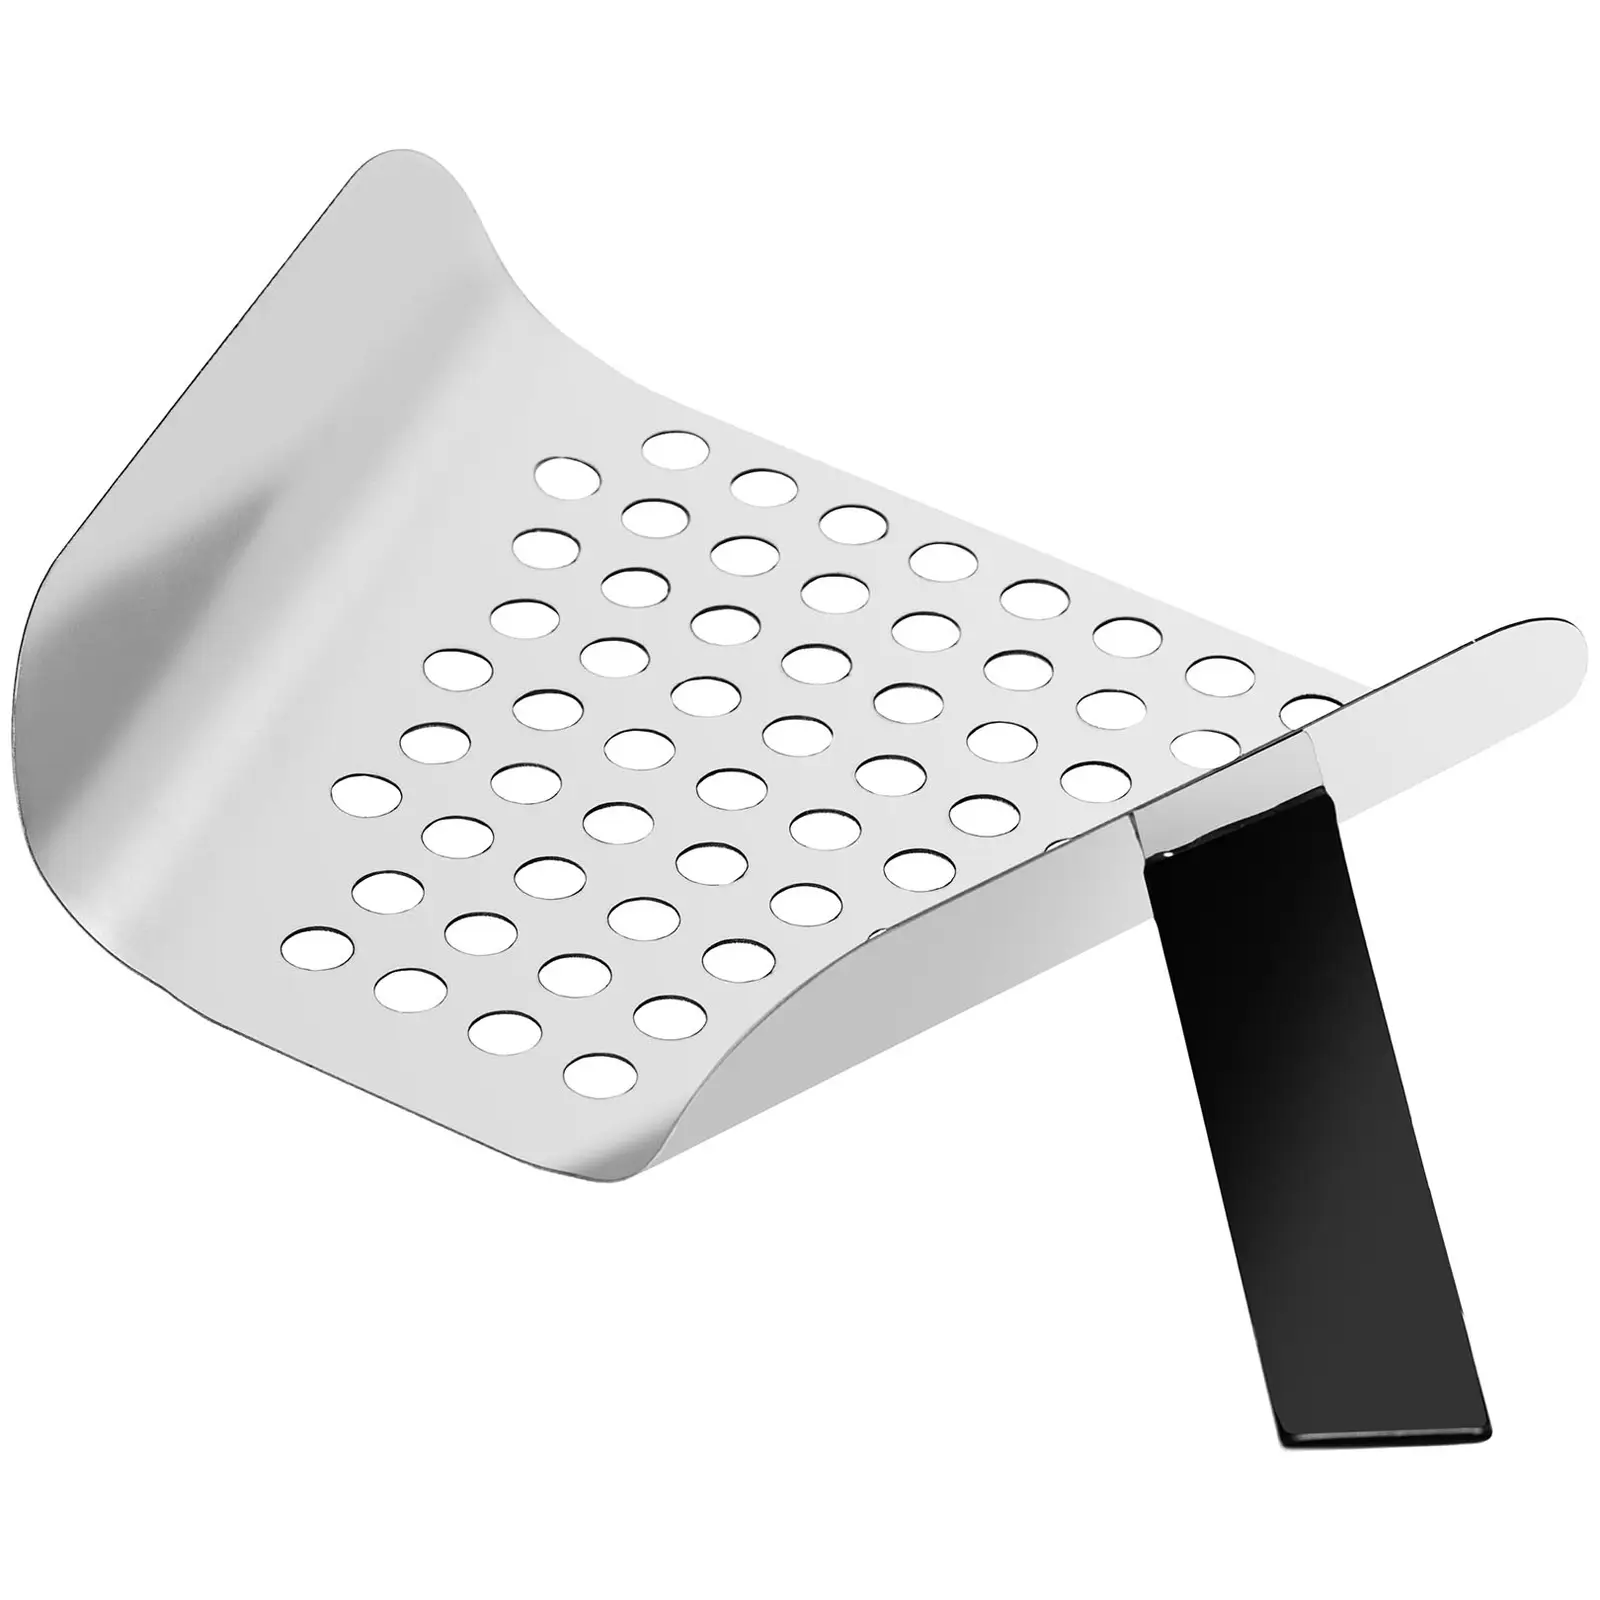 Popcornmaskin - Med underskåp på hjul - Royal Catering - Stor